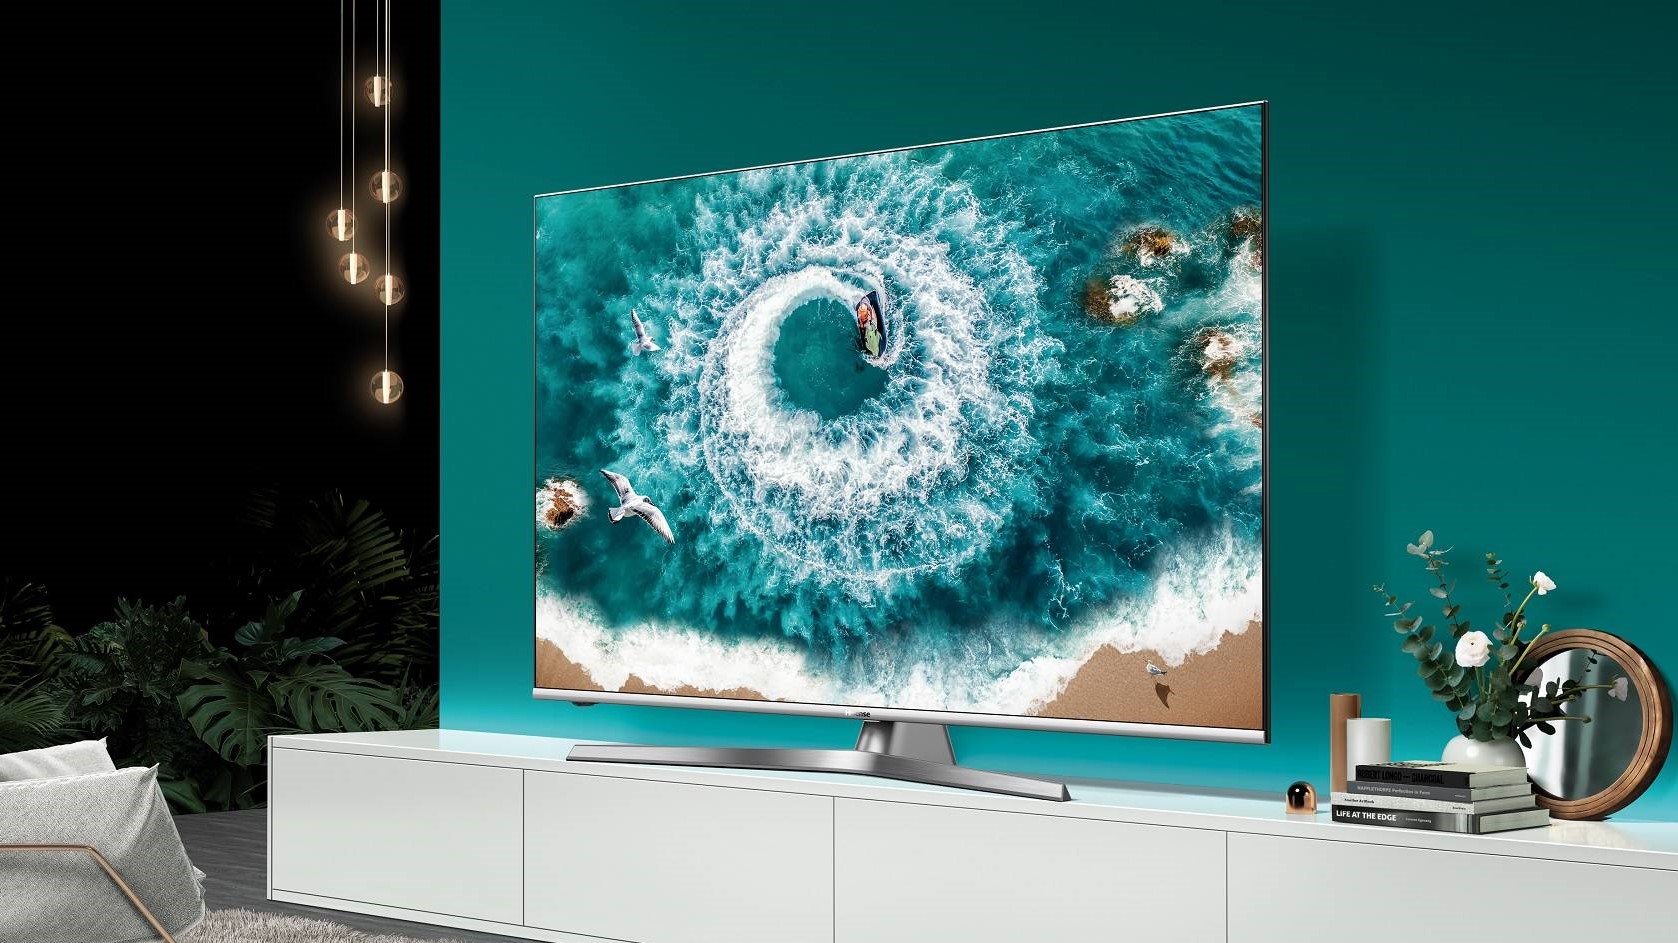 Hisense H8B ULED The best TVs under £1000 in 2019